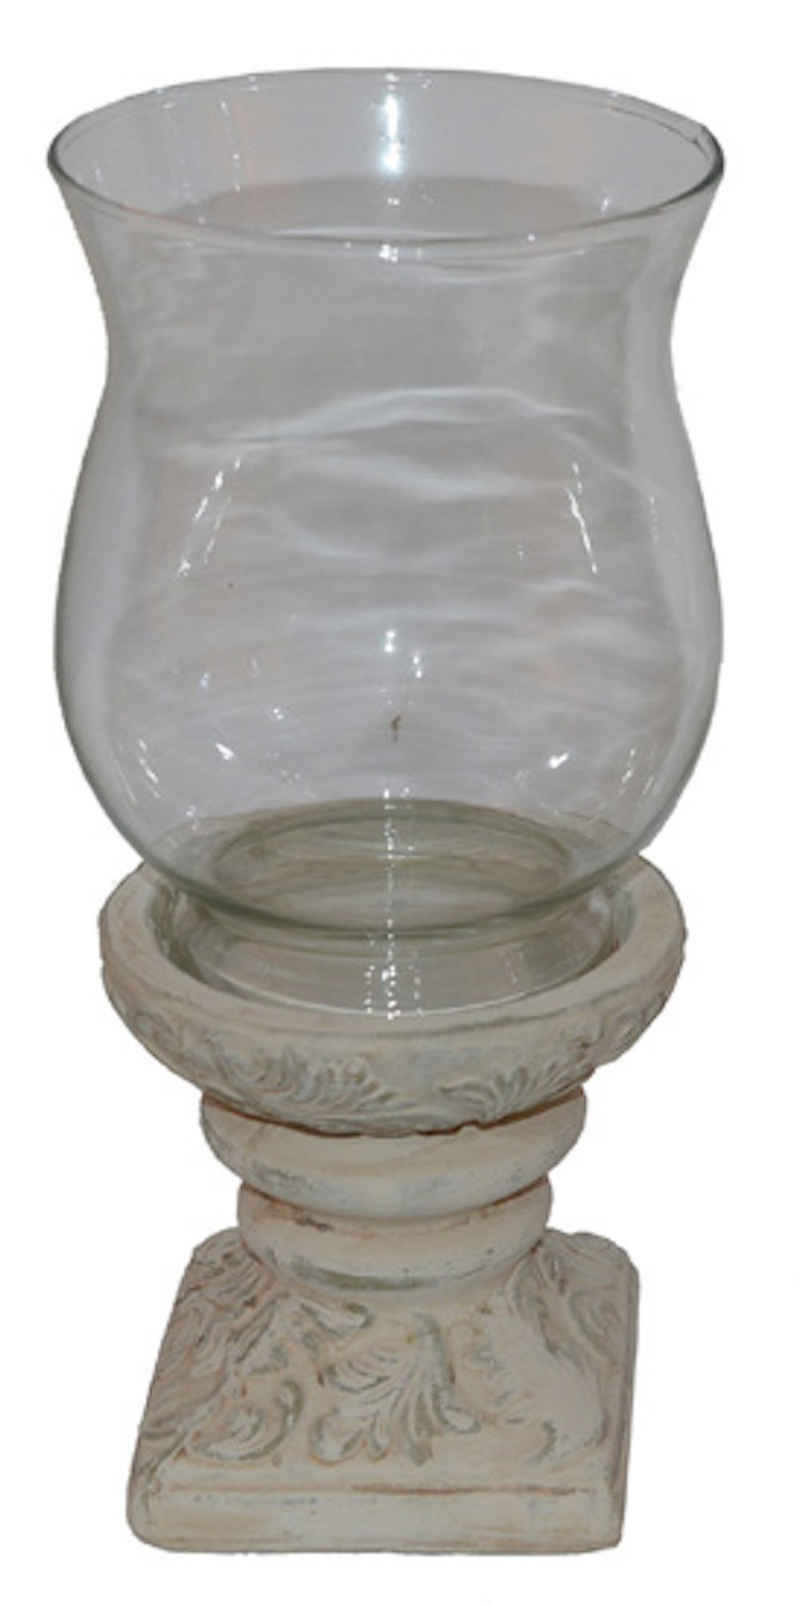 Windlicht Glaswindlicht Antik auf Keramikfuß antikweiß Keramik Glas H28cm (1 St), Keramikfuß mit Glasaufsatz